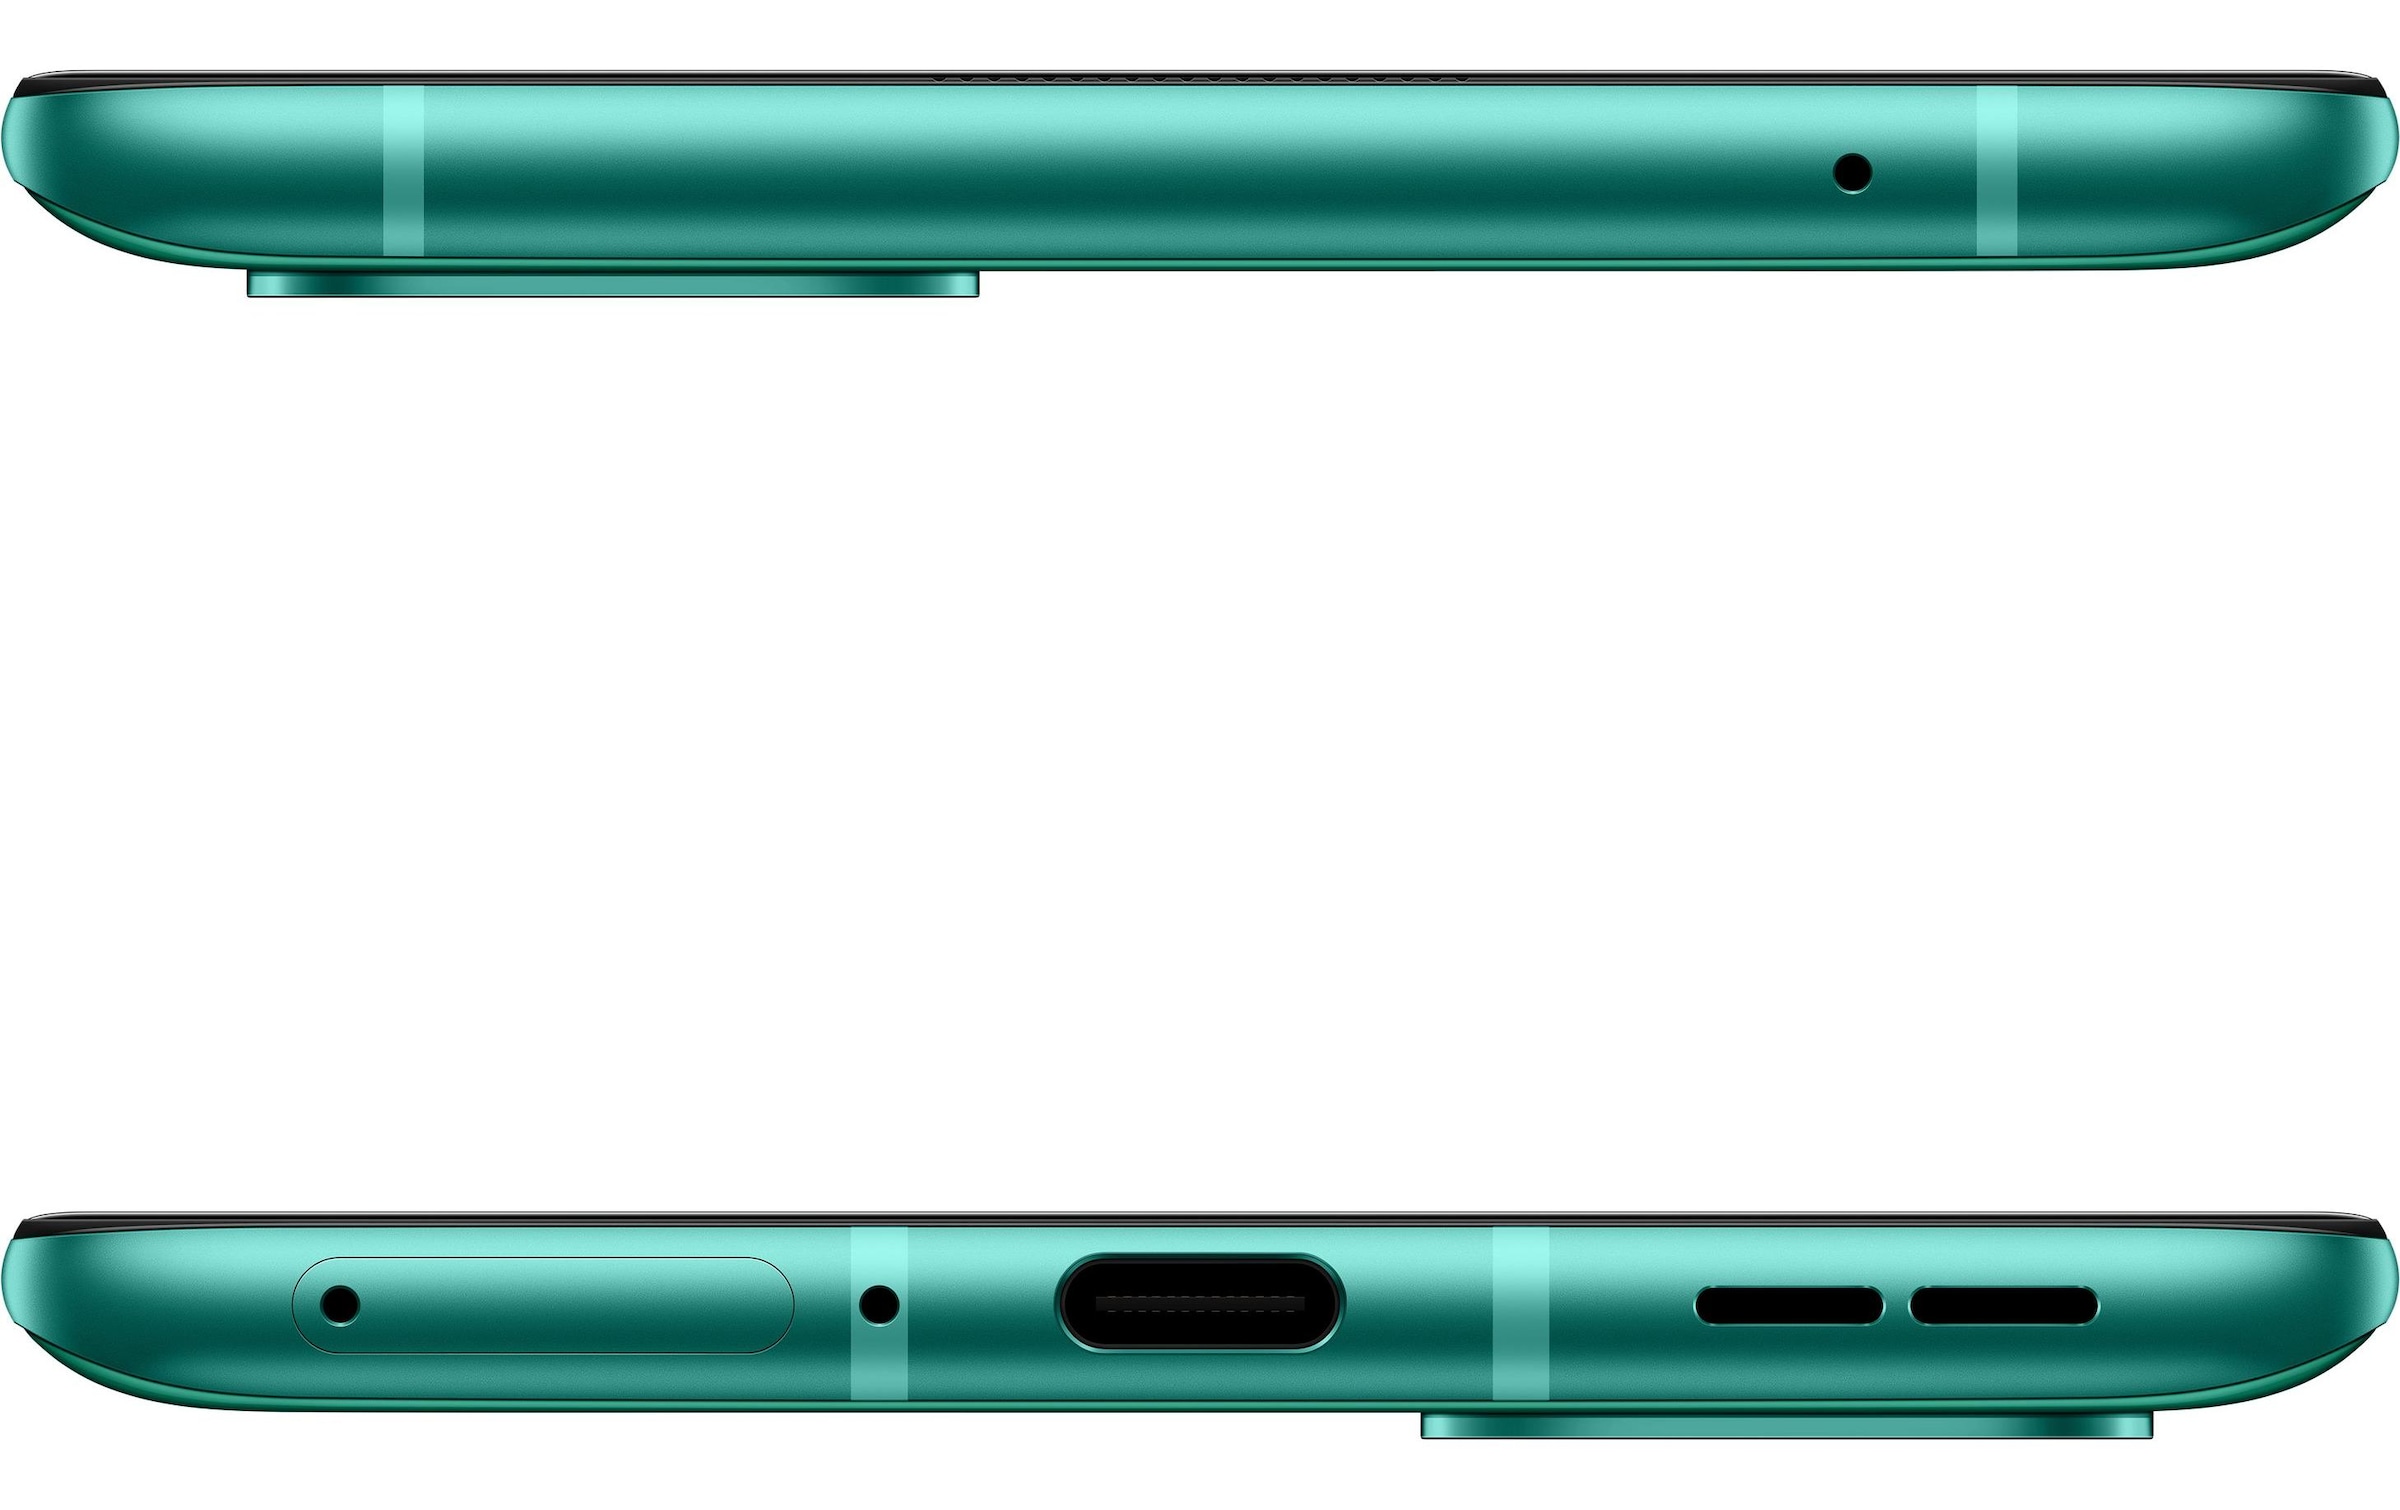 OnePlus Smartphone »8T 128 GB Aquamarine Green«, grün, 16,64 cm/6,55 Zoll, 128 GB Speicherplatz, 48 MP Kamera